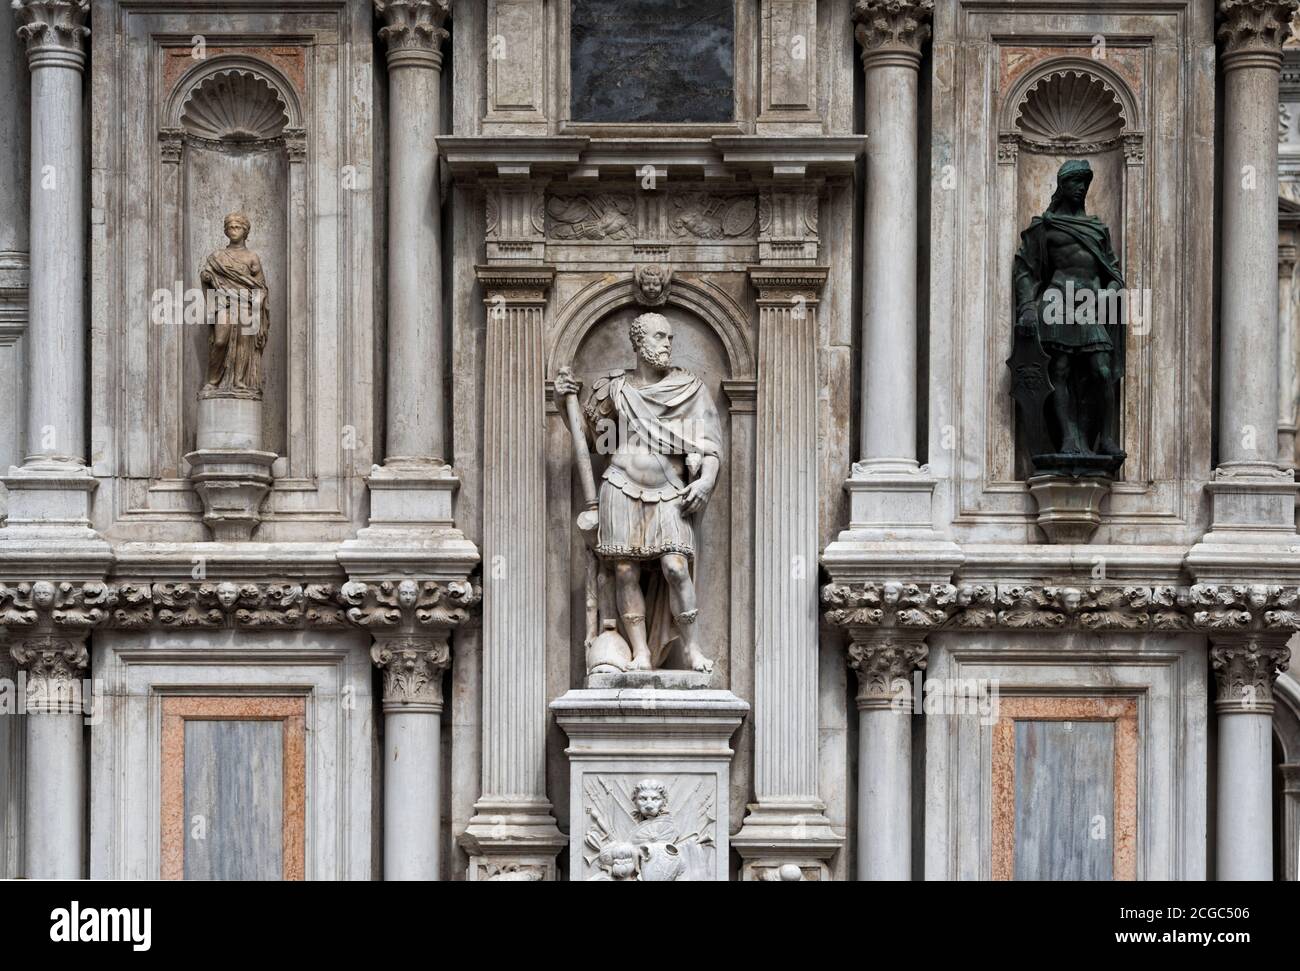 Los detalles arquitectónicos góticos y las estatuas clásicas de la fachada del Palacio Ducal en Venecia, Veneto, Italia. Foto de stock